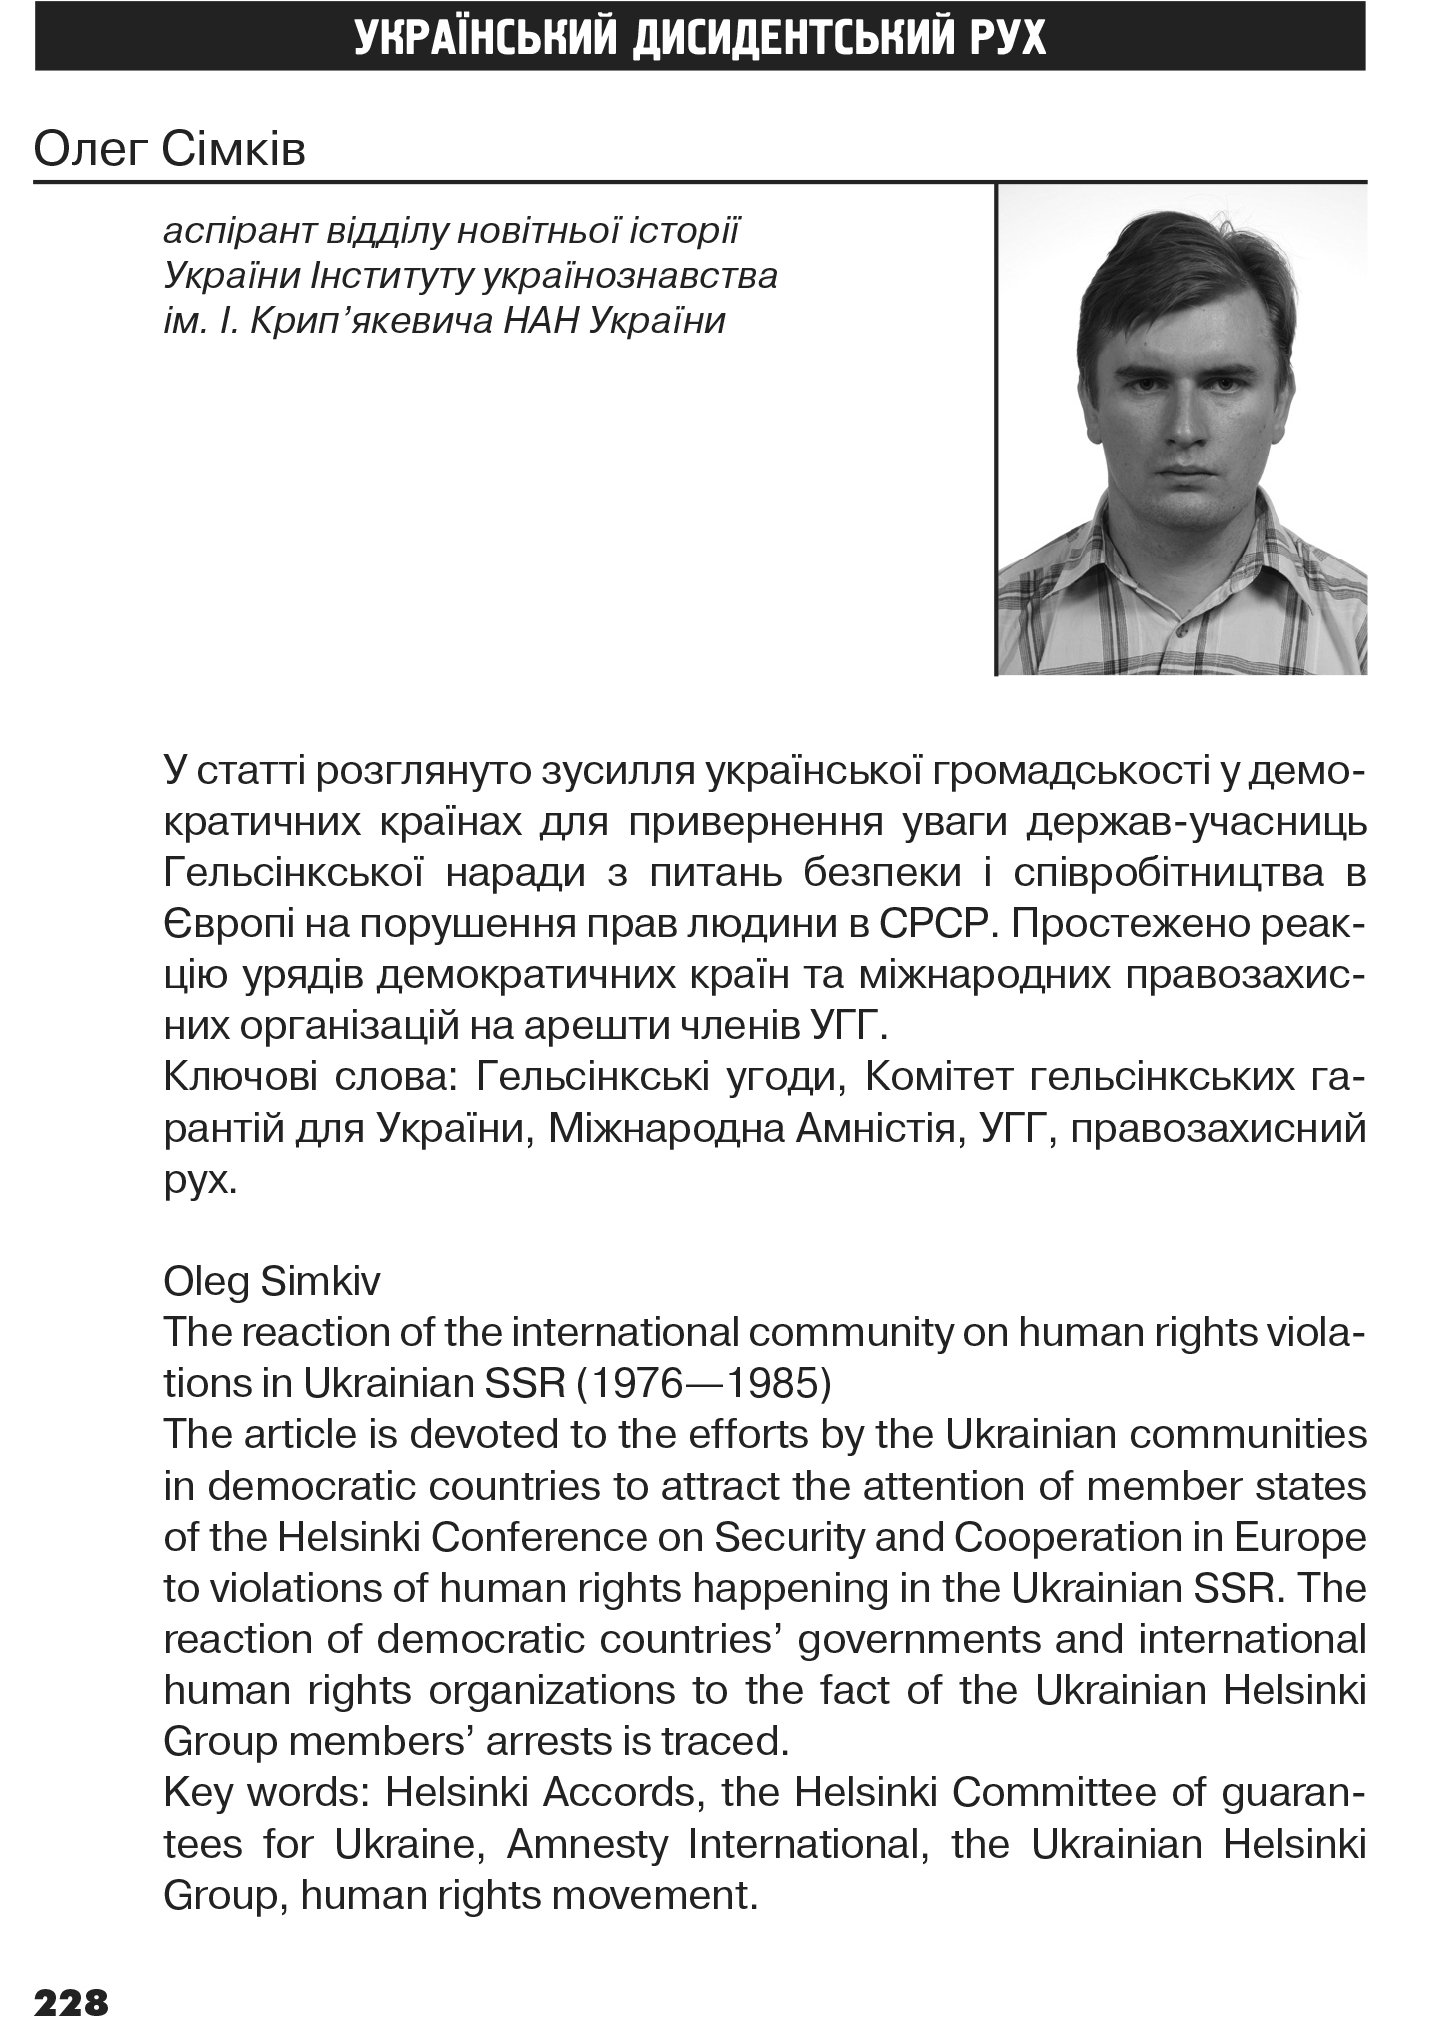 Український визвольний рух №18, ст. 228 - 251